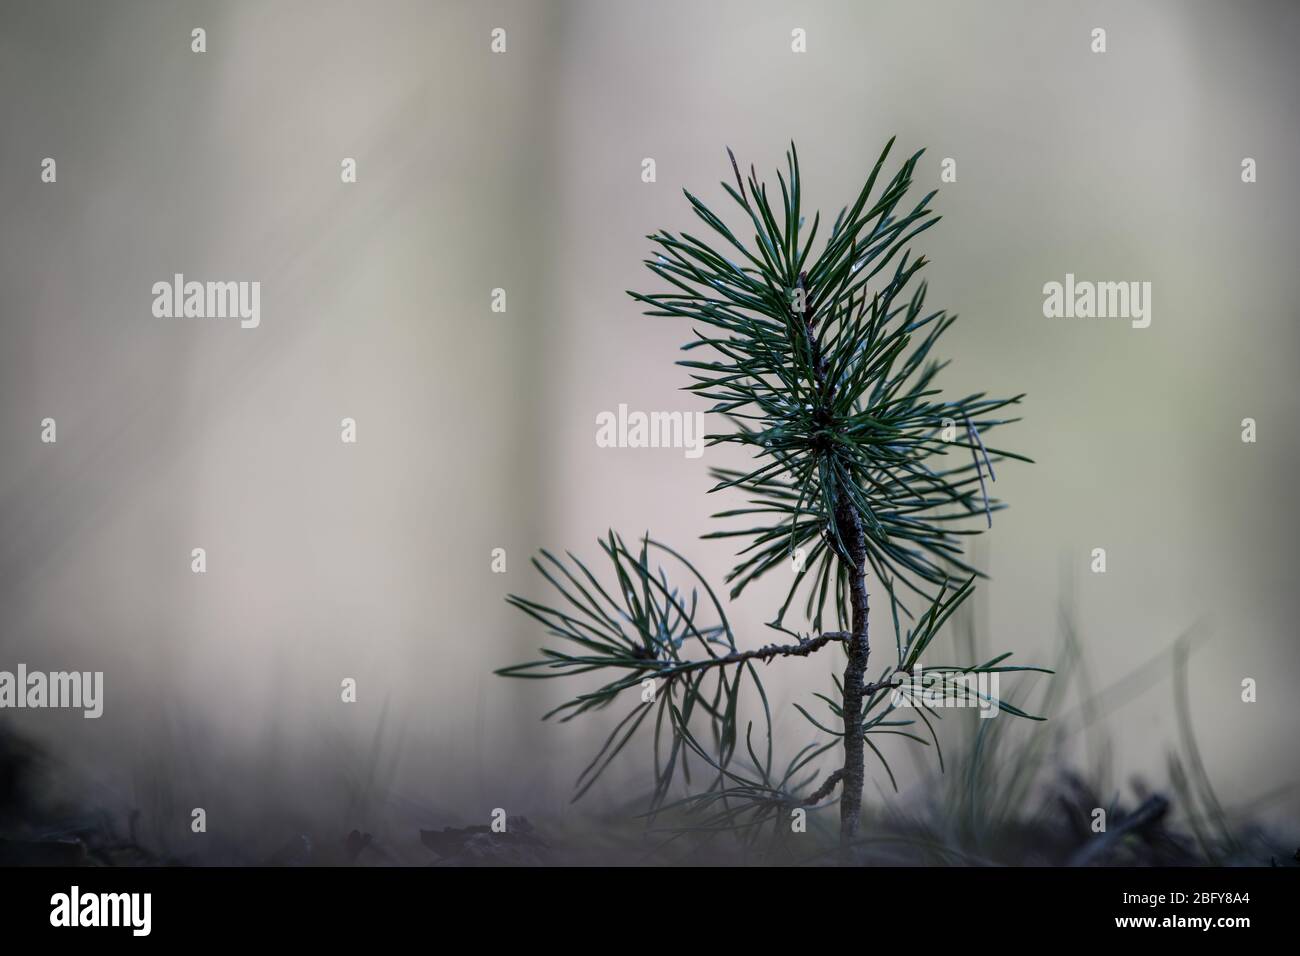 reboisement - jeune pin poussant dans la forêt de misty Banque D'Images